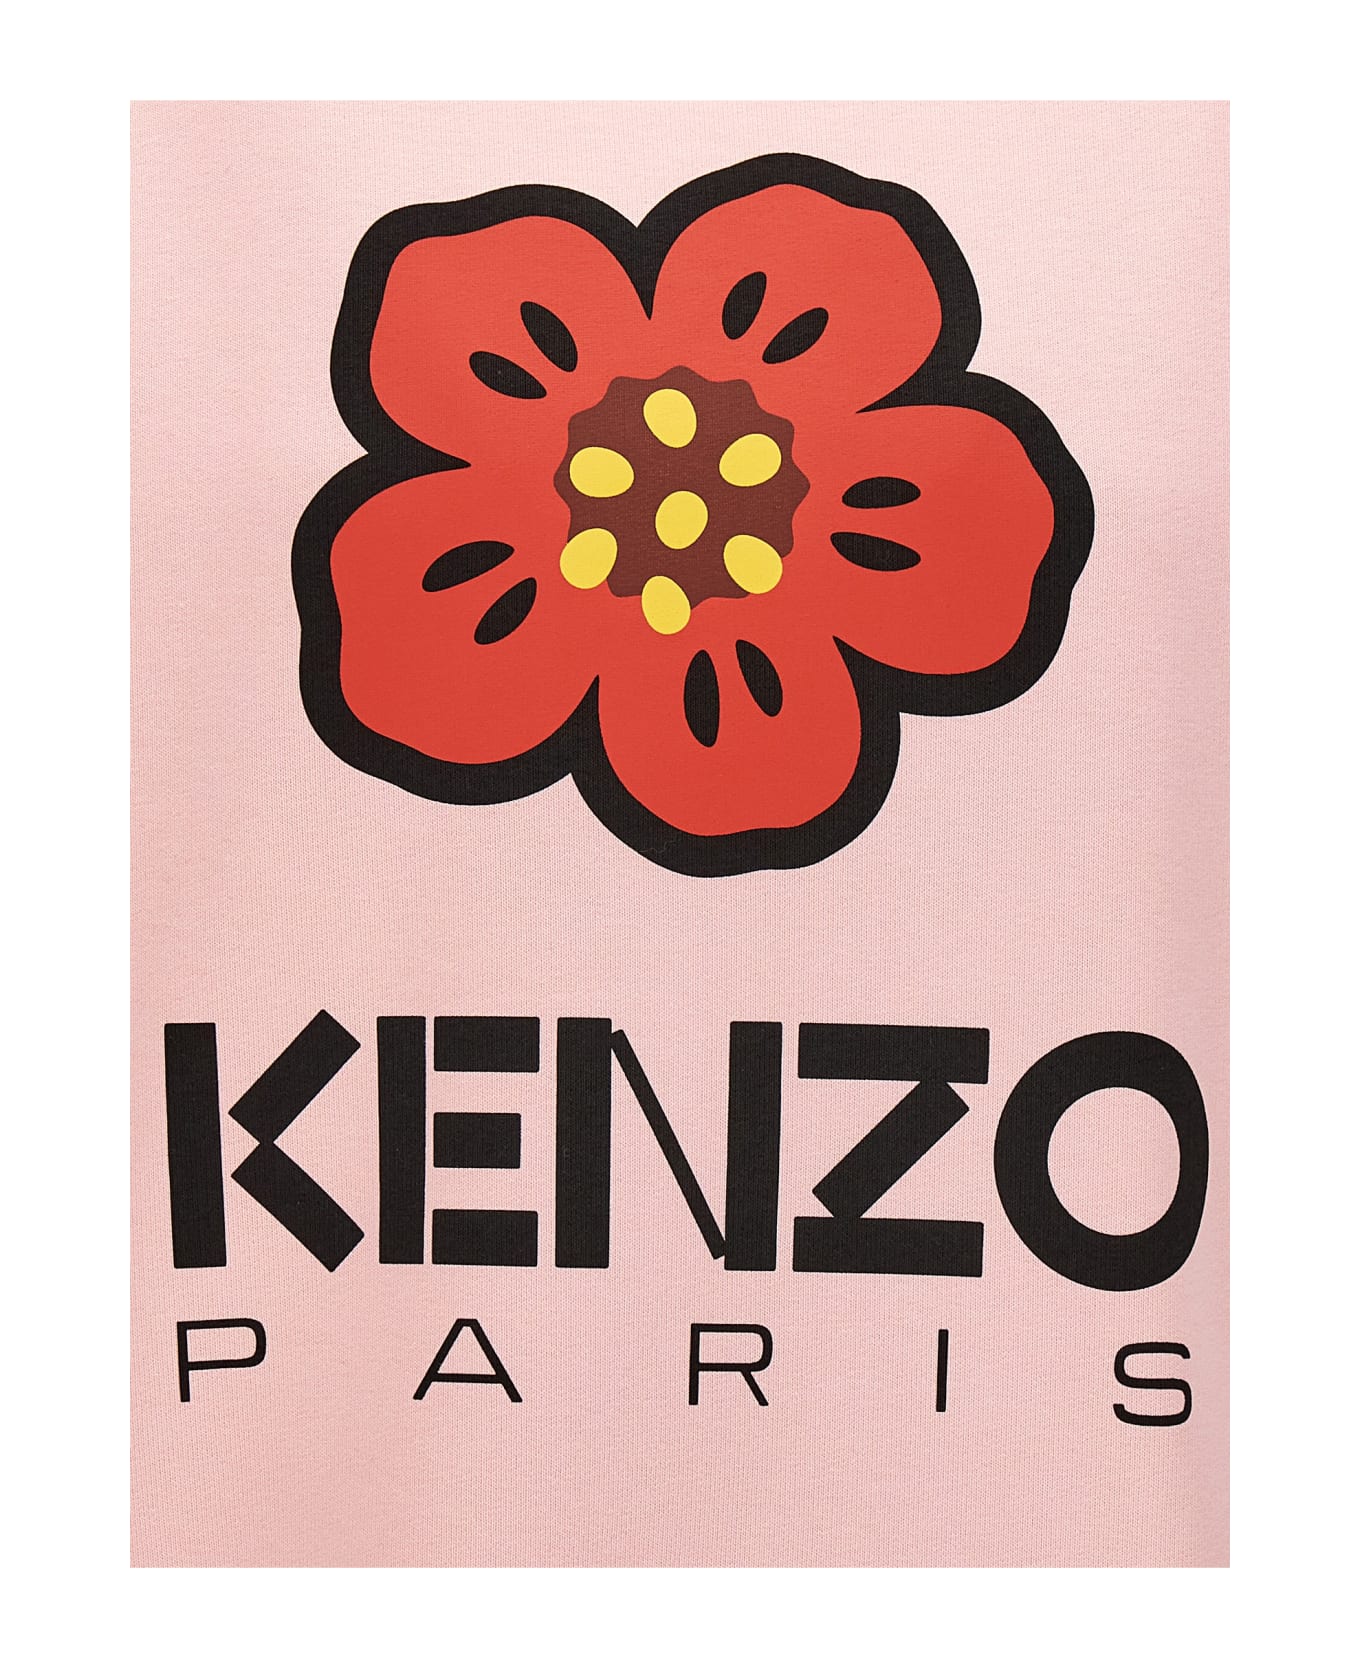 Kenzo Boke Boy Sweatshirt - Pink